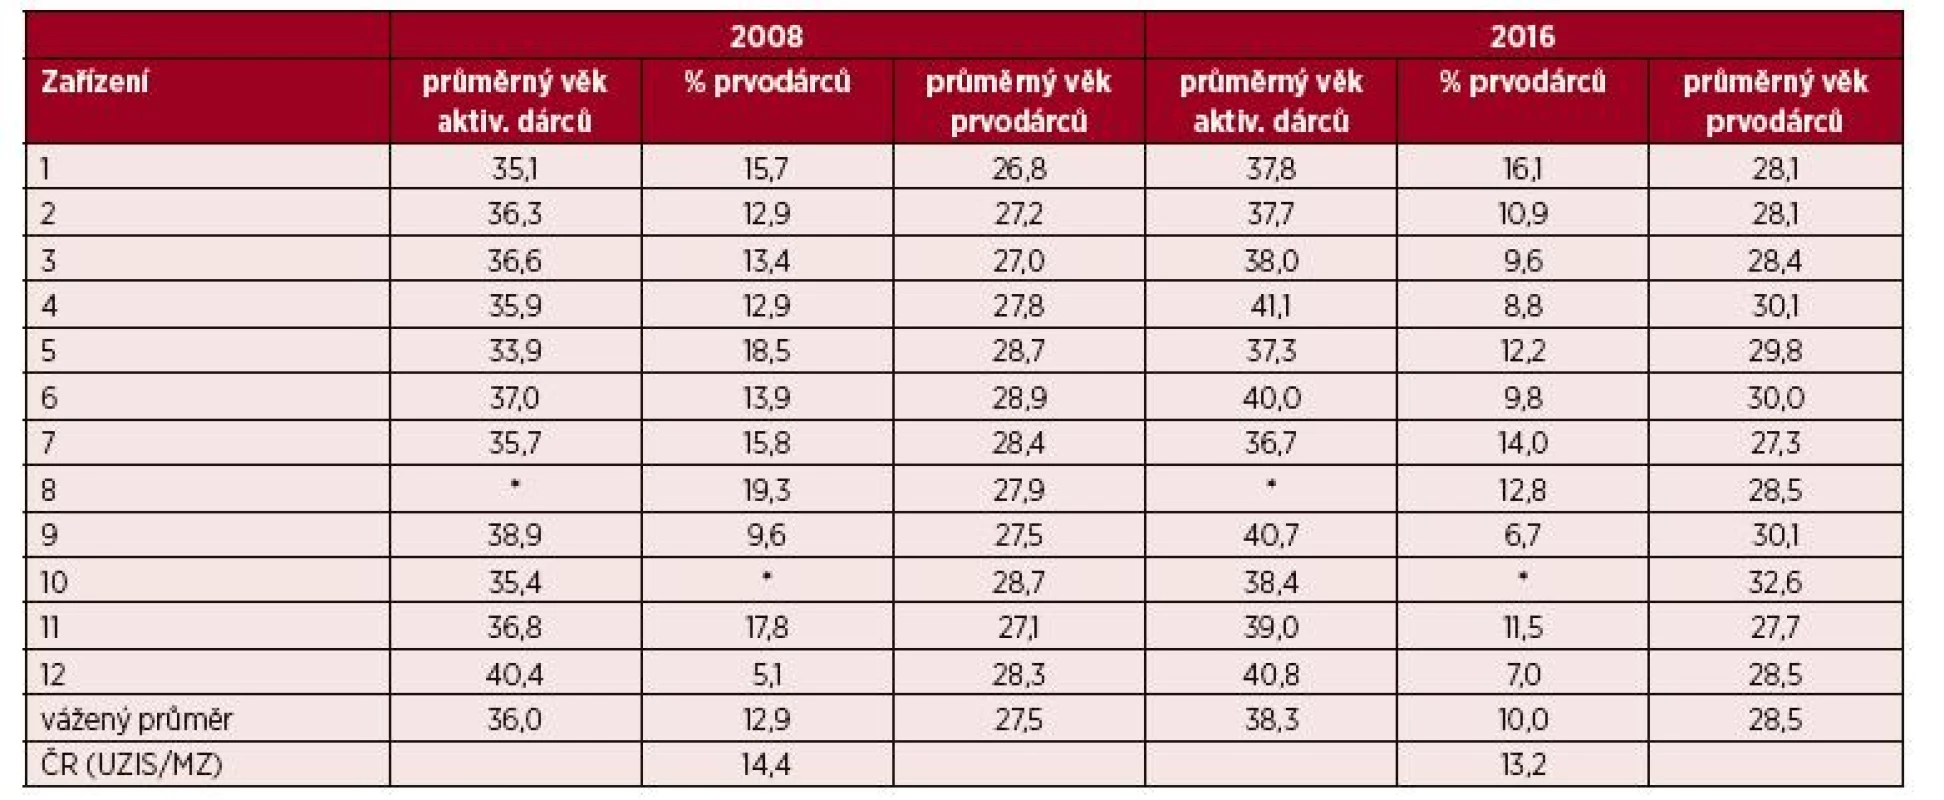 Struktura registru dárců plné krve v ZTS zapojených do studie – srovnání 2008/2016